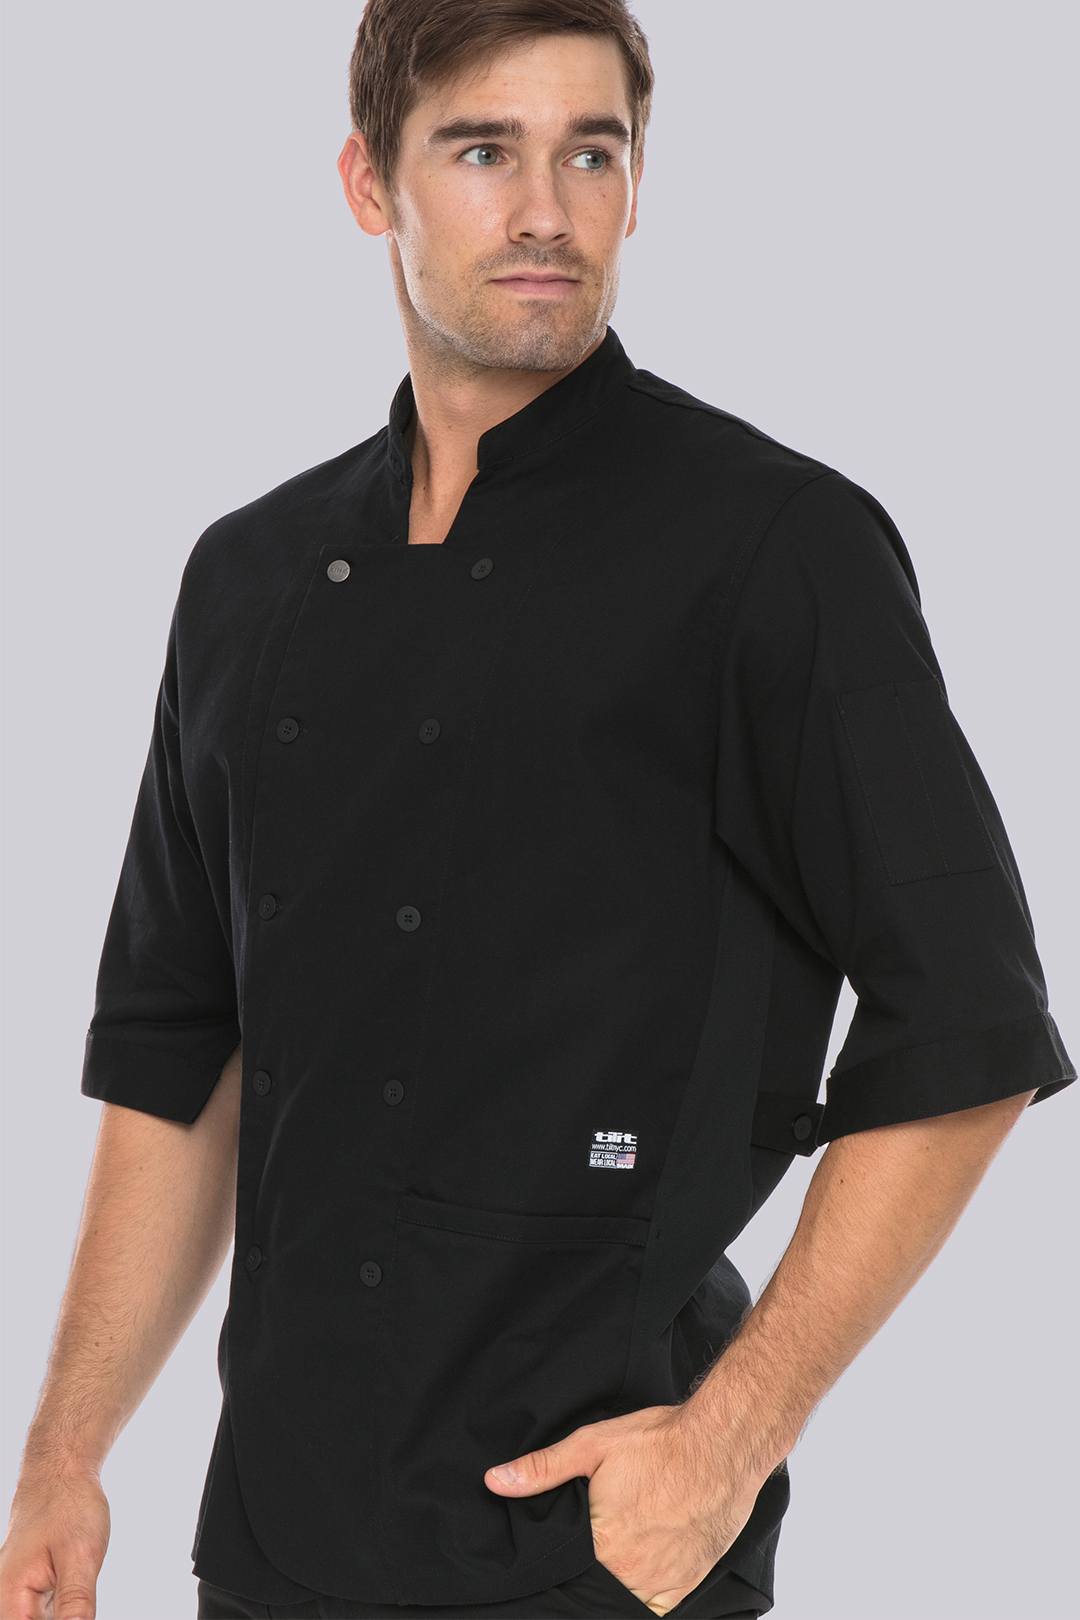 Heineman Chef Jacket Baker Jacket Short Sleeve Workwear White or Black Size XS-5XL 